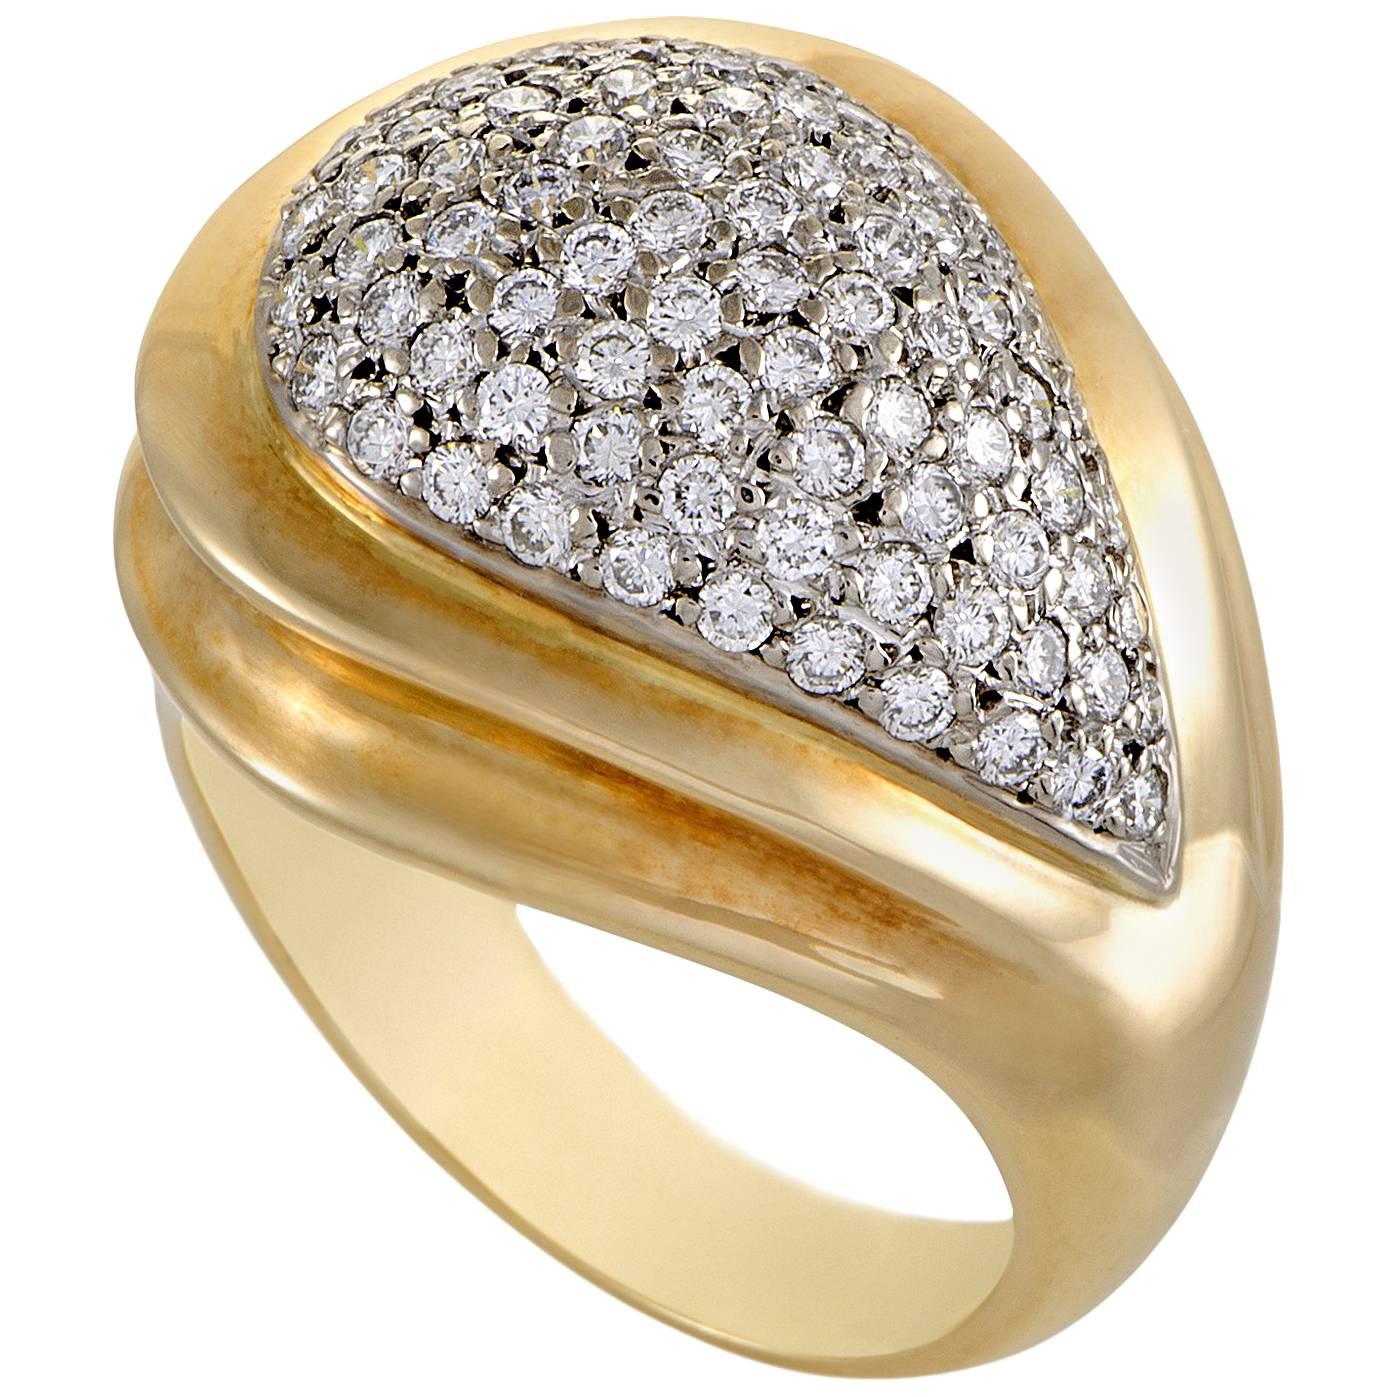 Zolotas Diamond Yellow and White Gold Ring